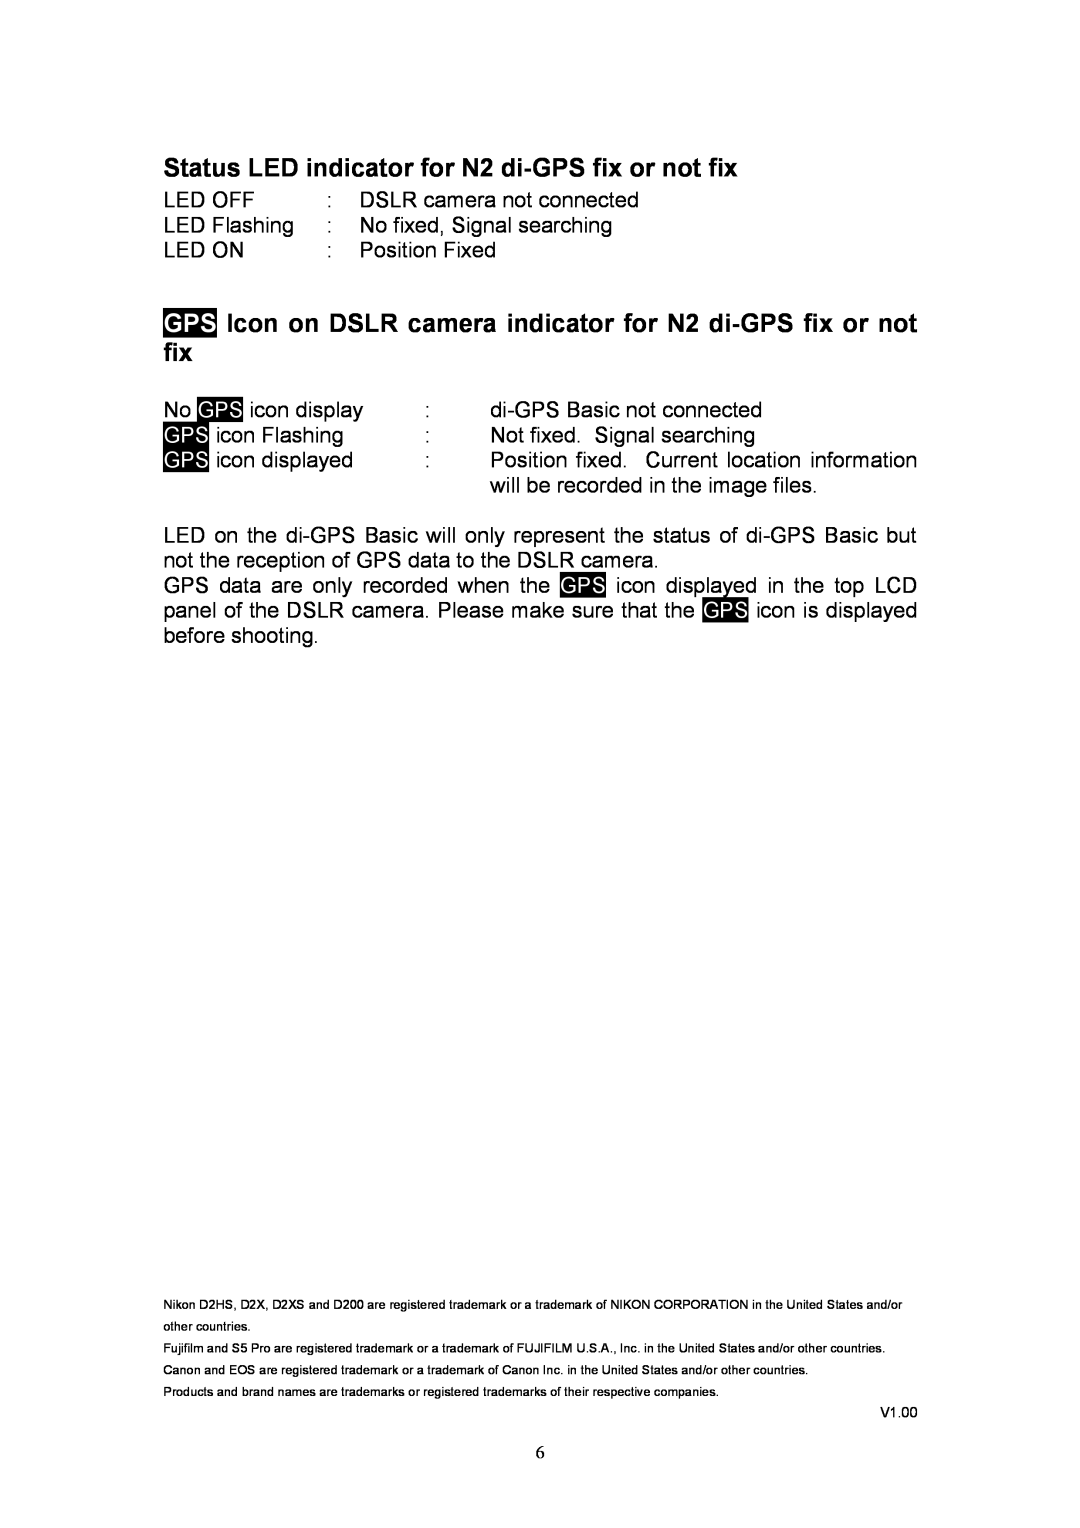 Nikon ver1.00 manual Status LED indicator for N2 di-GPS fix or not fix 